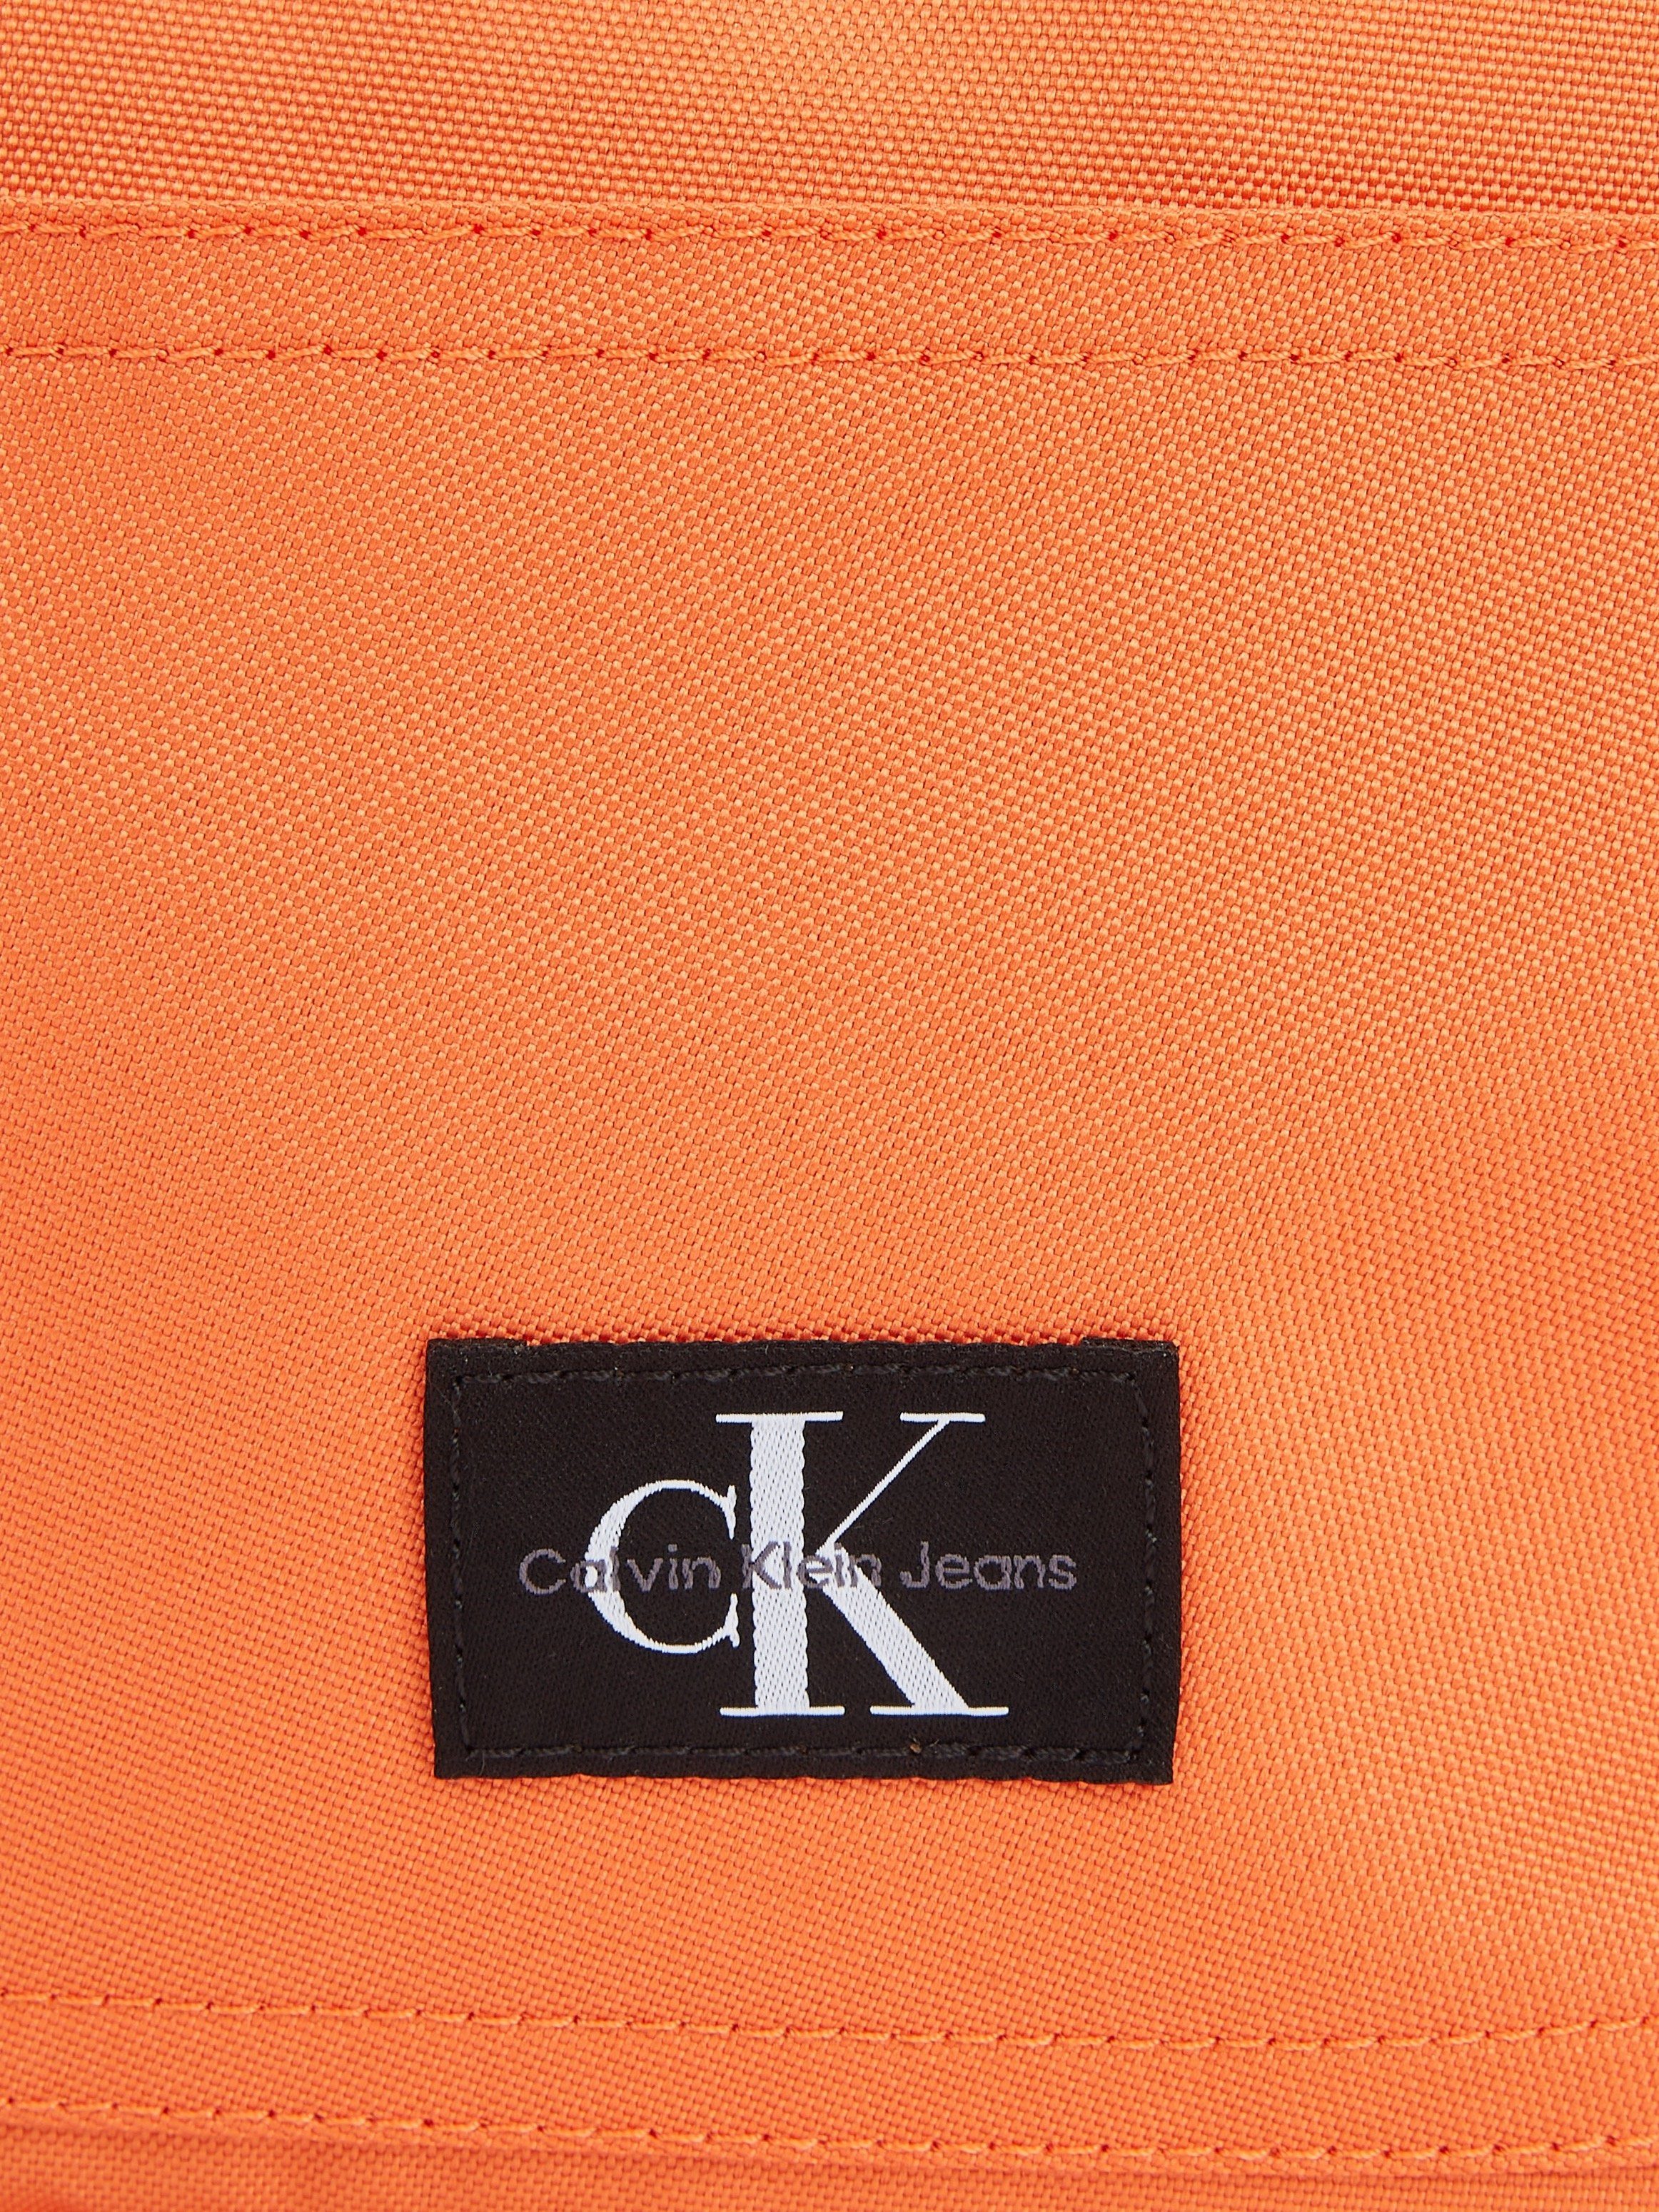 koralle in ESSENTIALS Design Calvin BP40 Klein W, dezentem Cityrucksack CAMPUS Jeans SPORT